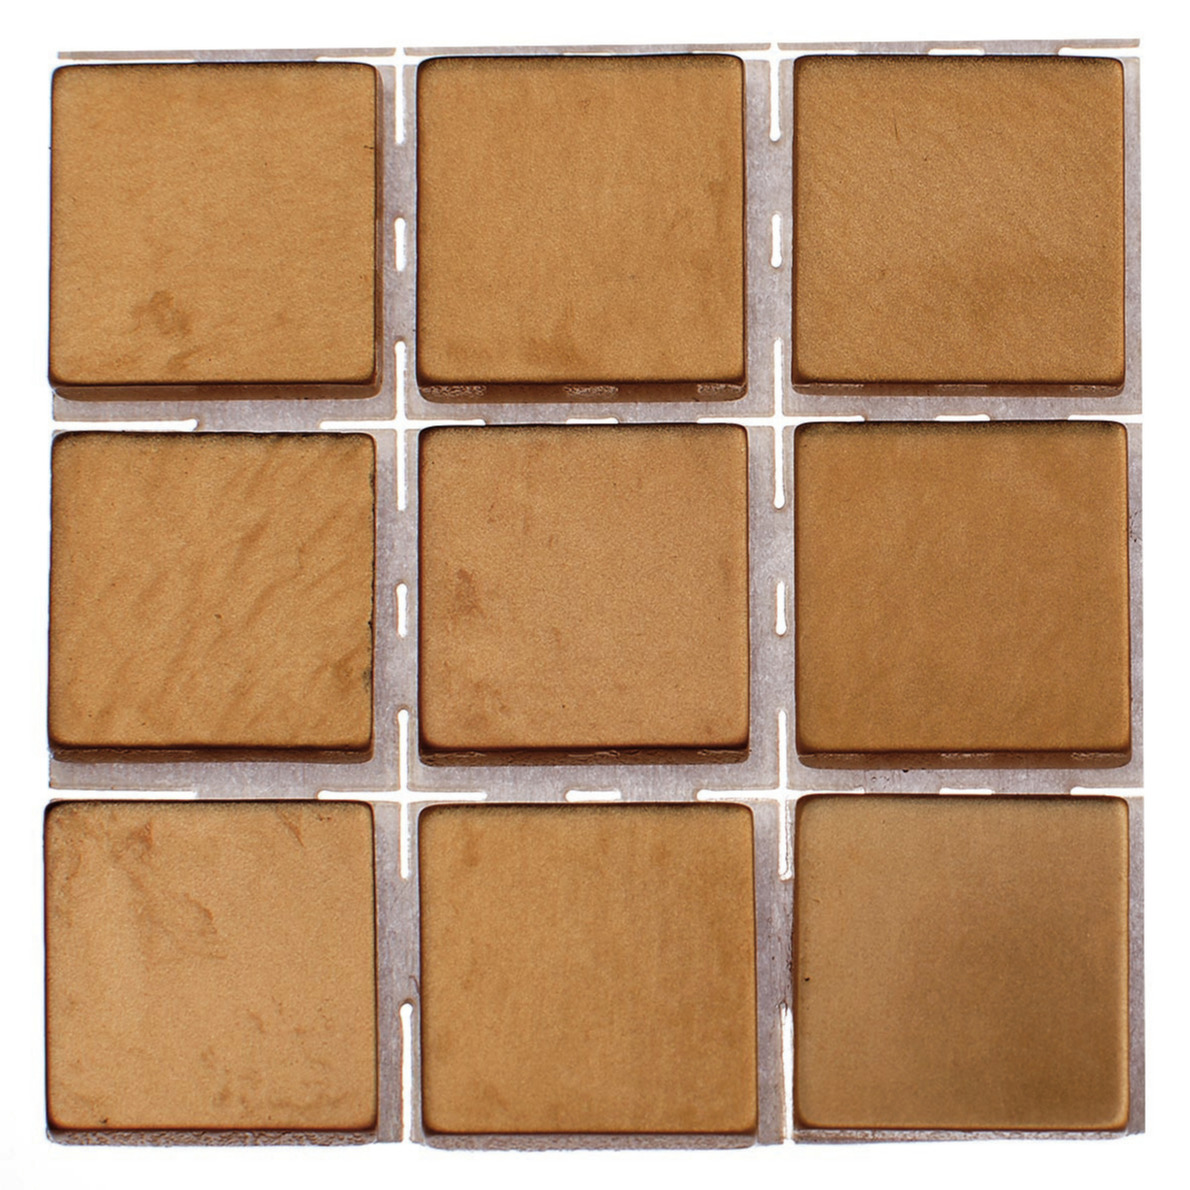 378x stuks mozaieken maken steentjes/tegels kleur brons 10 x 10 x 2 mm -